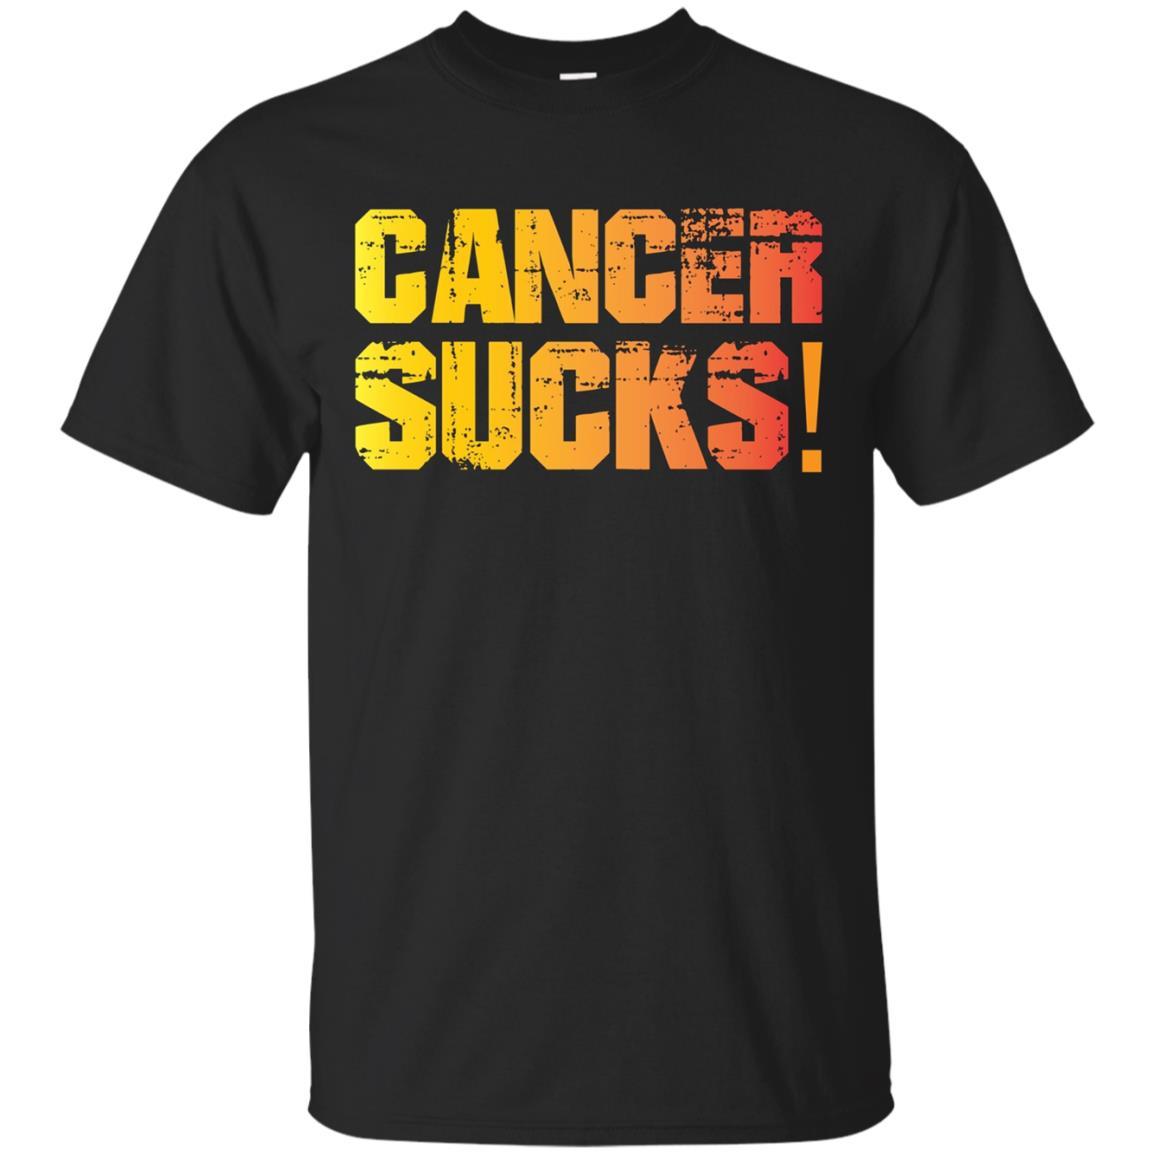 Cancer Sucks Get Well Gift Idea Shirt